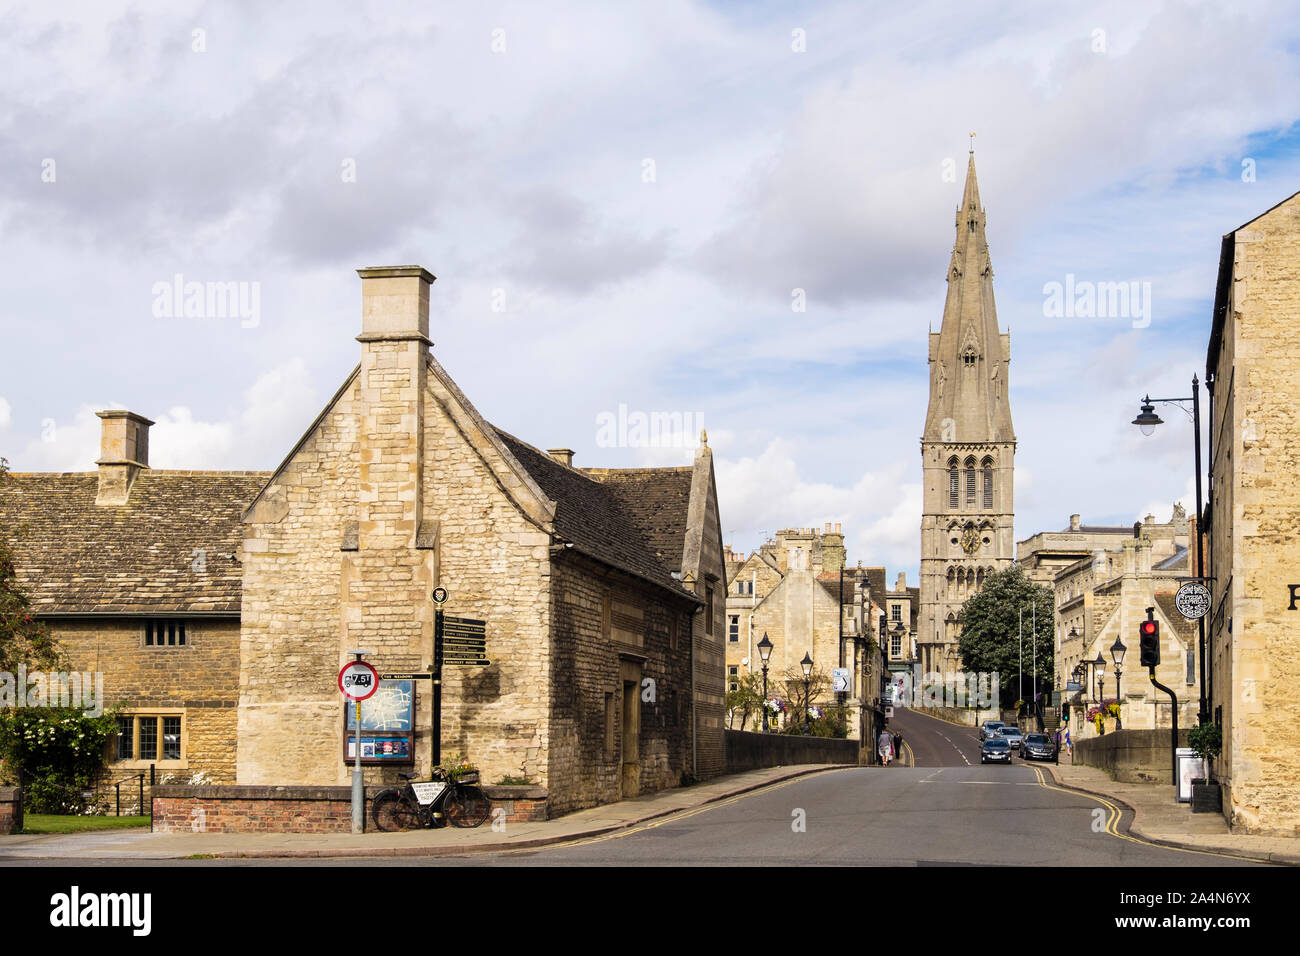 Vista a lo largo de una calle bordeada de viejos edificios de piedra caliza a la iglesia de Santa María y el puente sobre el río Welland. Stamford, Lincolnshire, Inglaterra, Reino Unido, Gran Bretaña Foto de stock